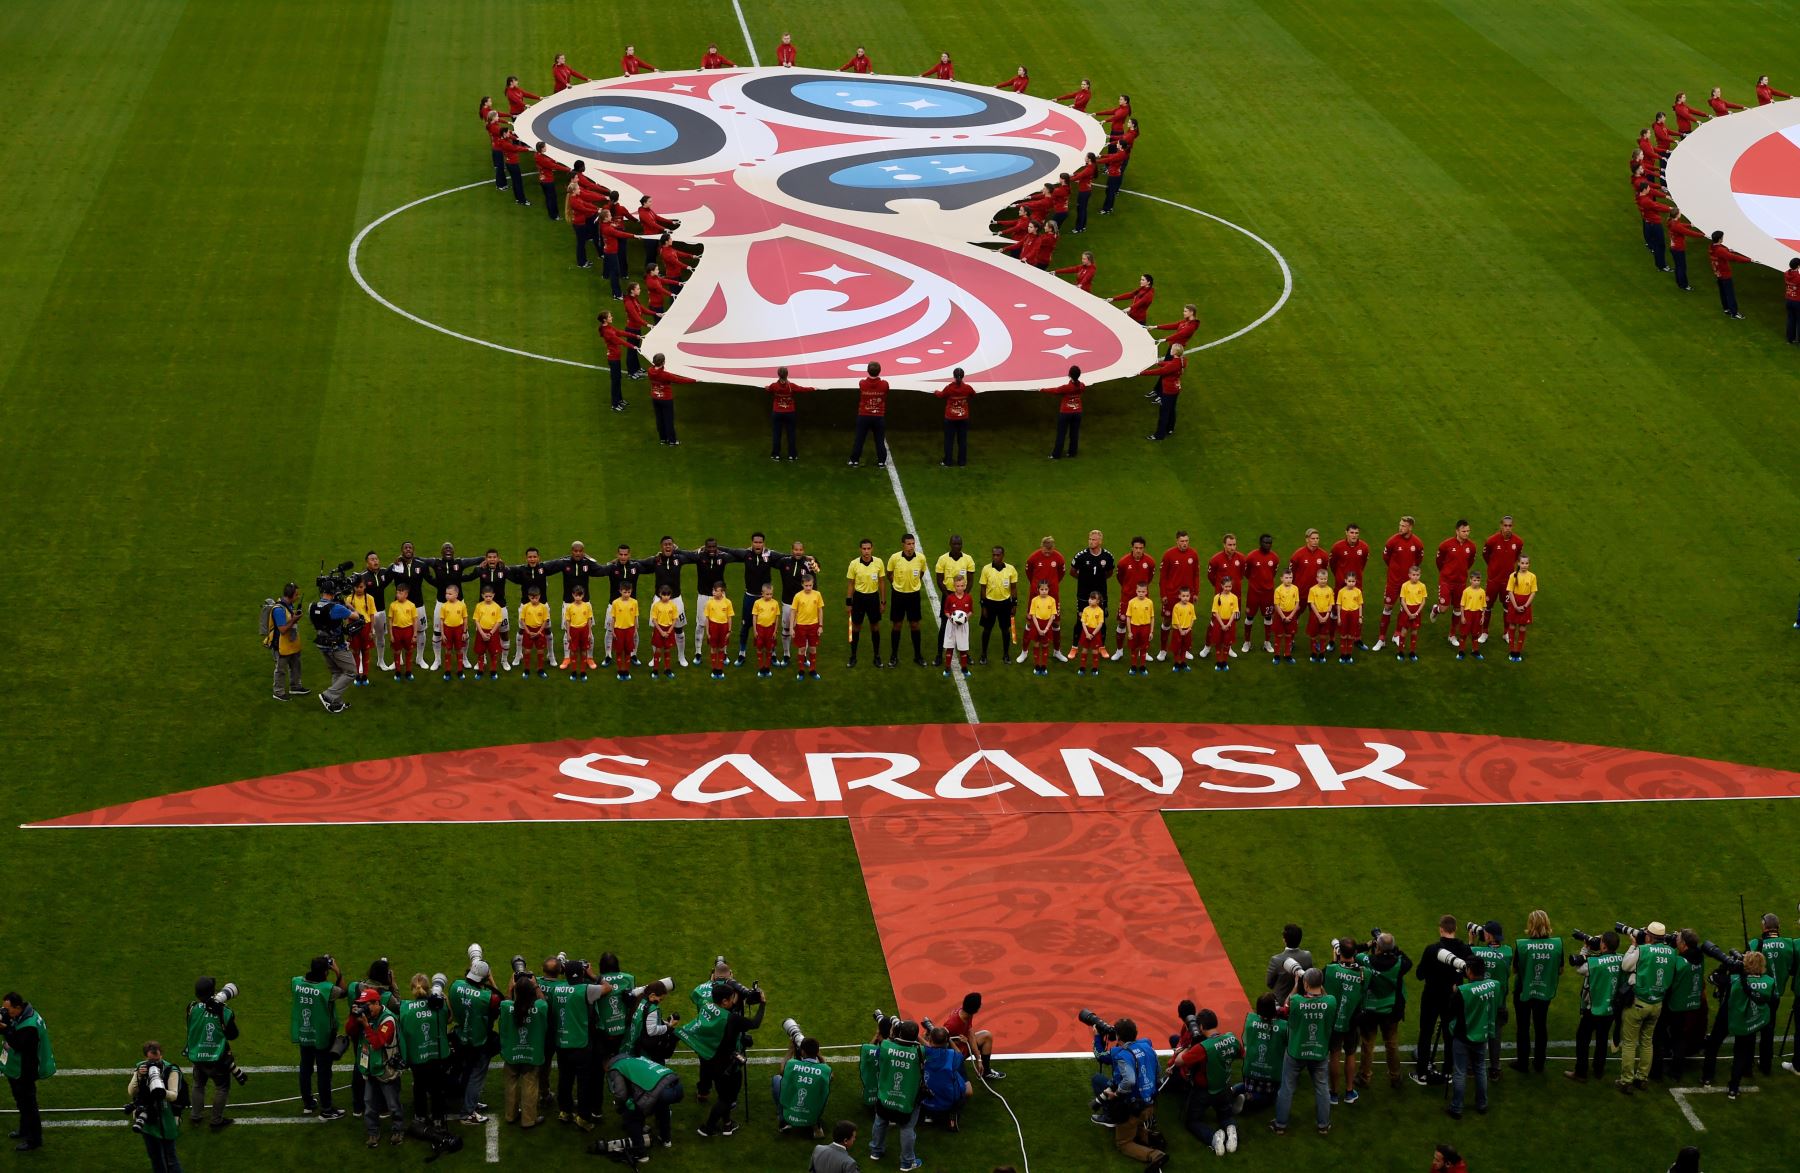 Los equipos se alinean para los himnos nacionales antes del inicio del partido de fútbol del Grupo C de la Copa Mundial Rusia 2018 entre Perú y Dinamarca en el Mordovia Arena en Saransk el 16 de junio de 2018.
Foto: AFP